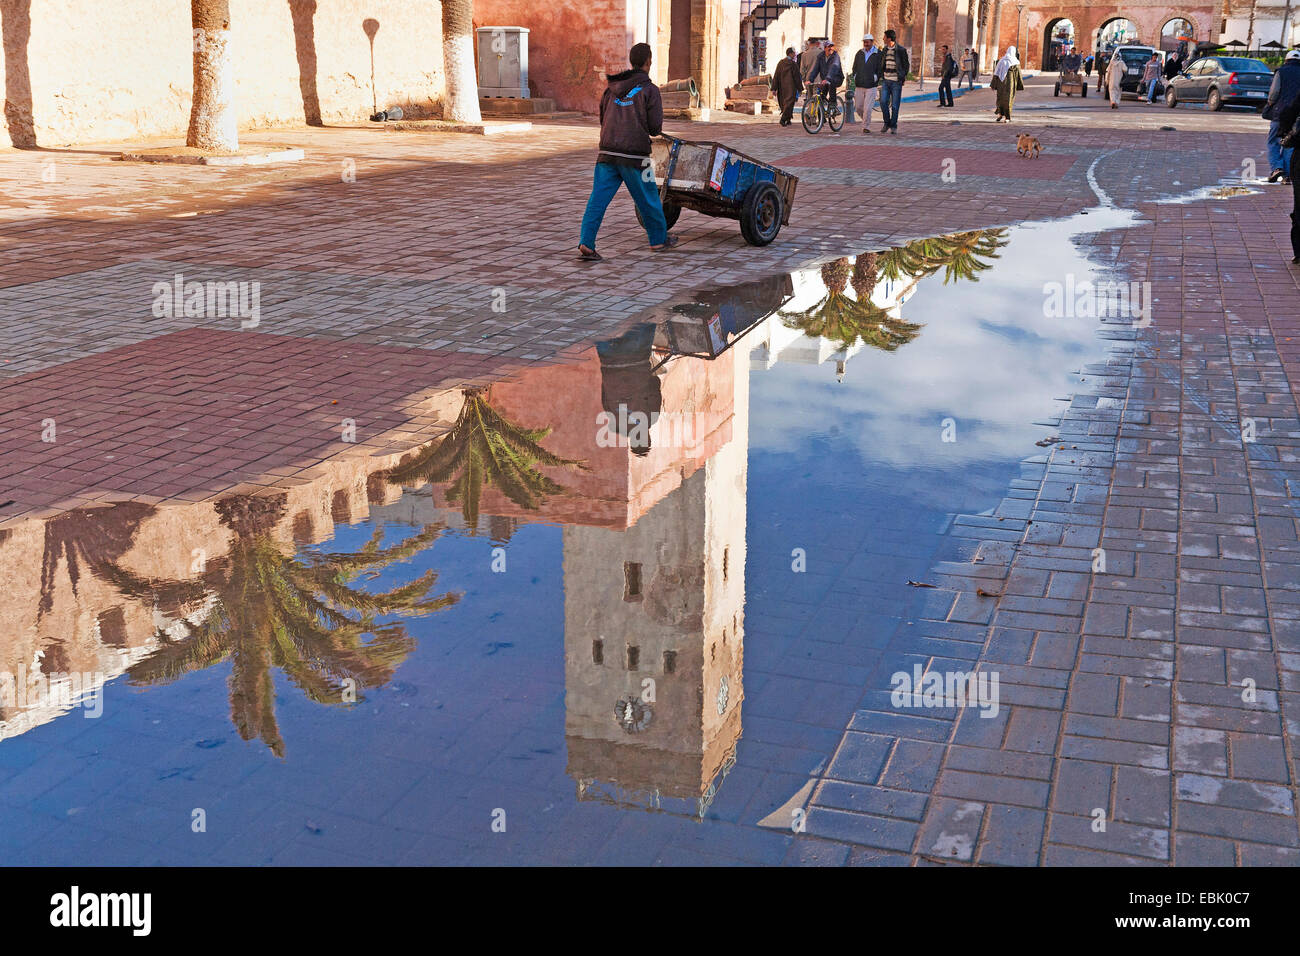 Mann mit einem Karren an der historischen Stadtmauer widerspiegelt in Pfütze Wasser nach einem Regenschauer, Marokko Essaouira Stockfoto